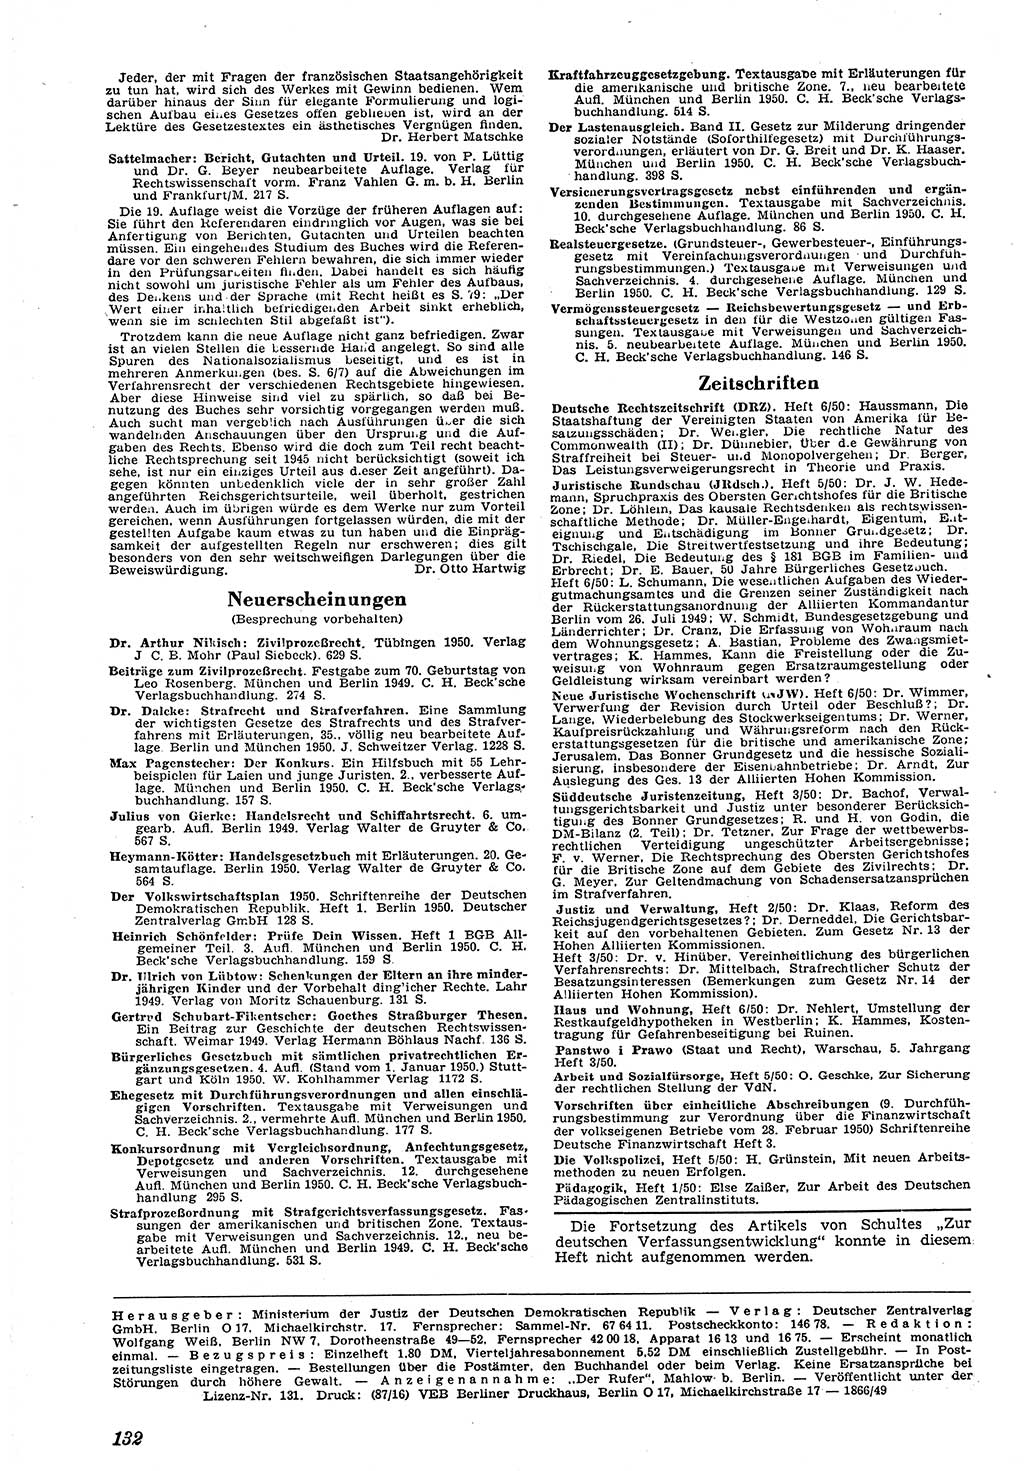 Neue Justiz (NJ), Zeitschrift für Recht und Rechtswissenschaft [Deutsche Demokratische Republik (DDR)], 4. Jahrgang 1950, Seite 132 (NJ DDR 1950, S. 132)